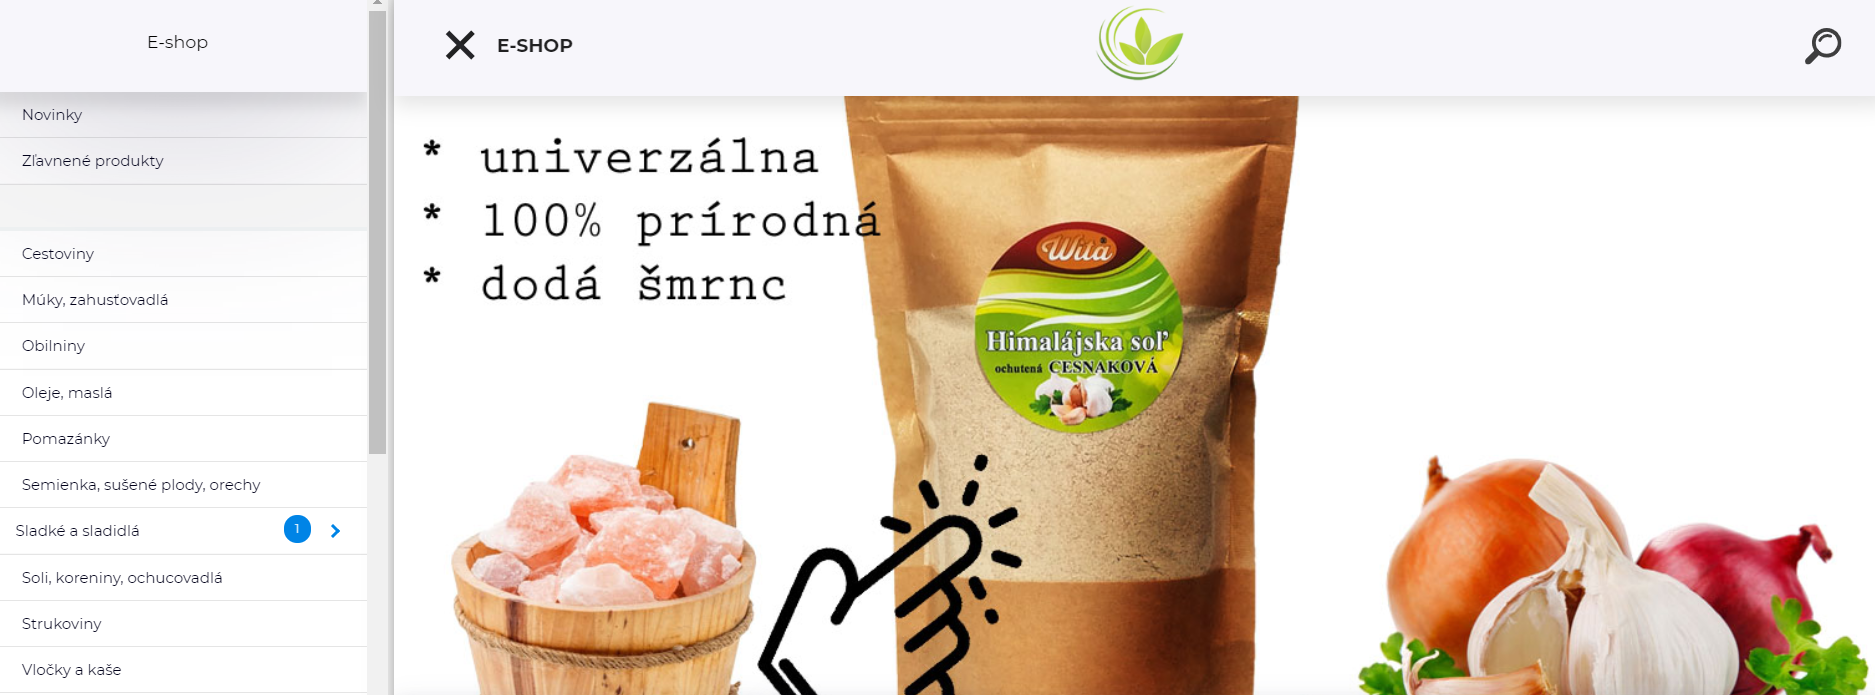 Zdravepotraviny-eshop.sk online nakupovanie